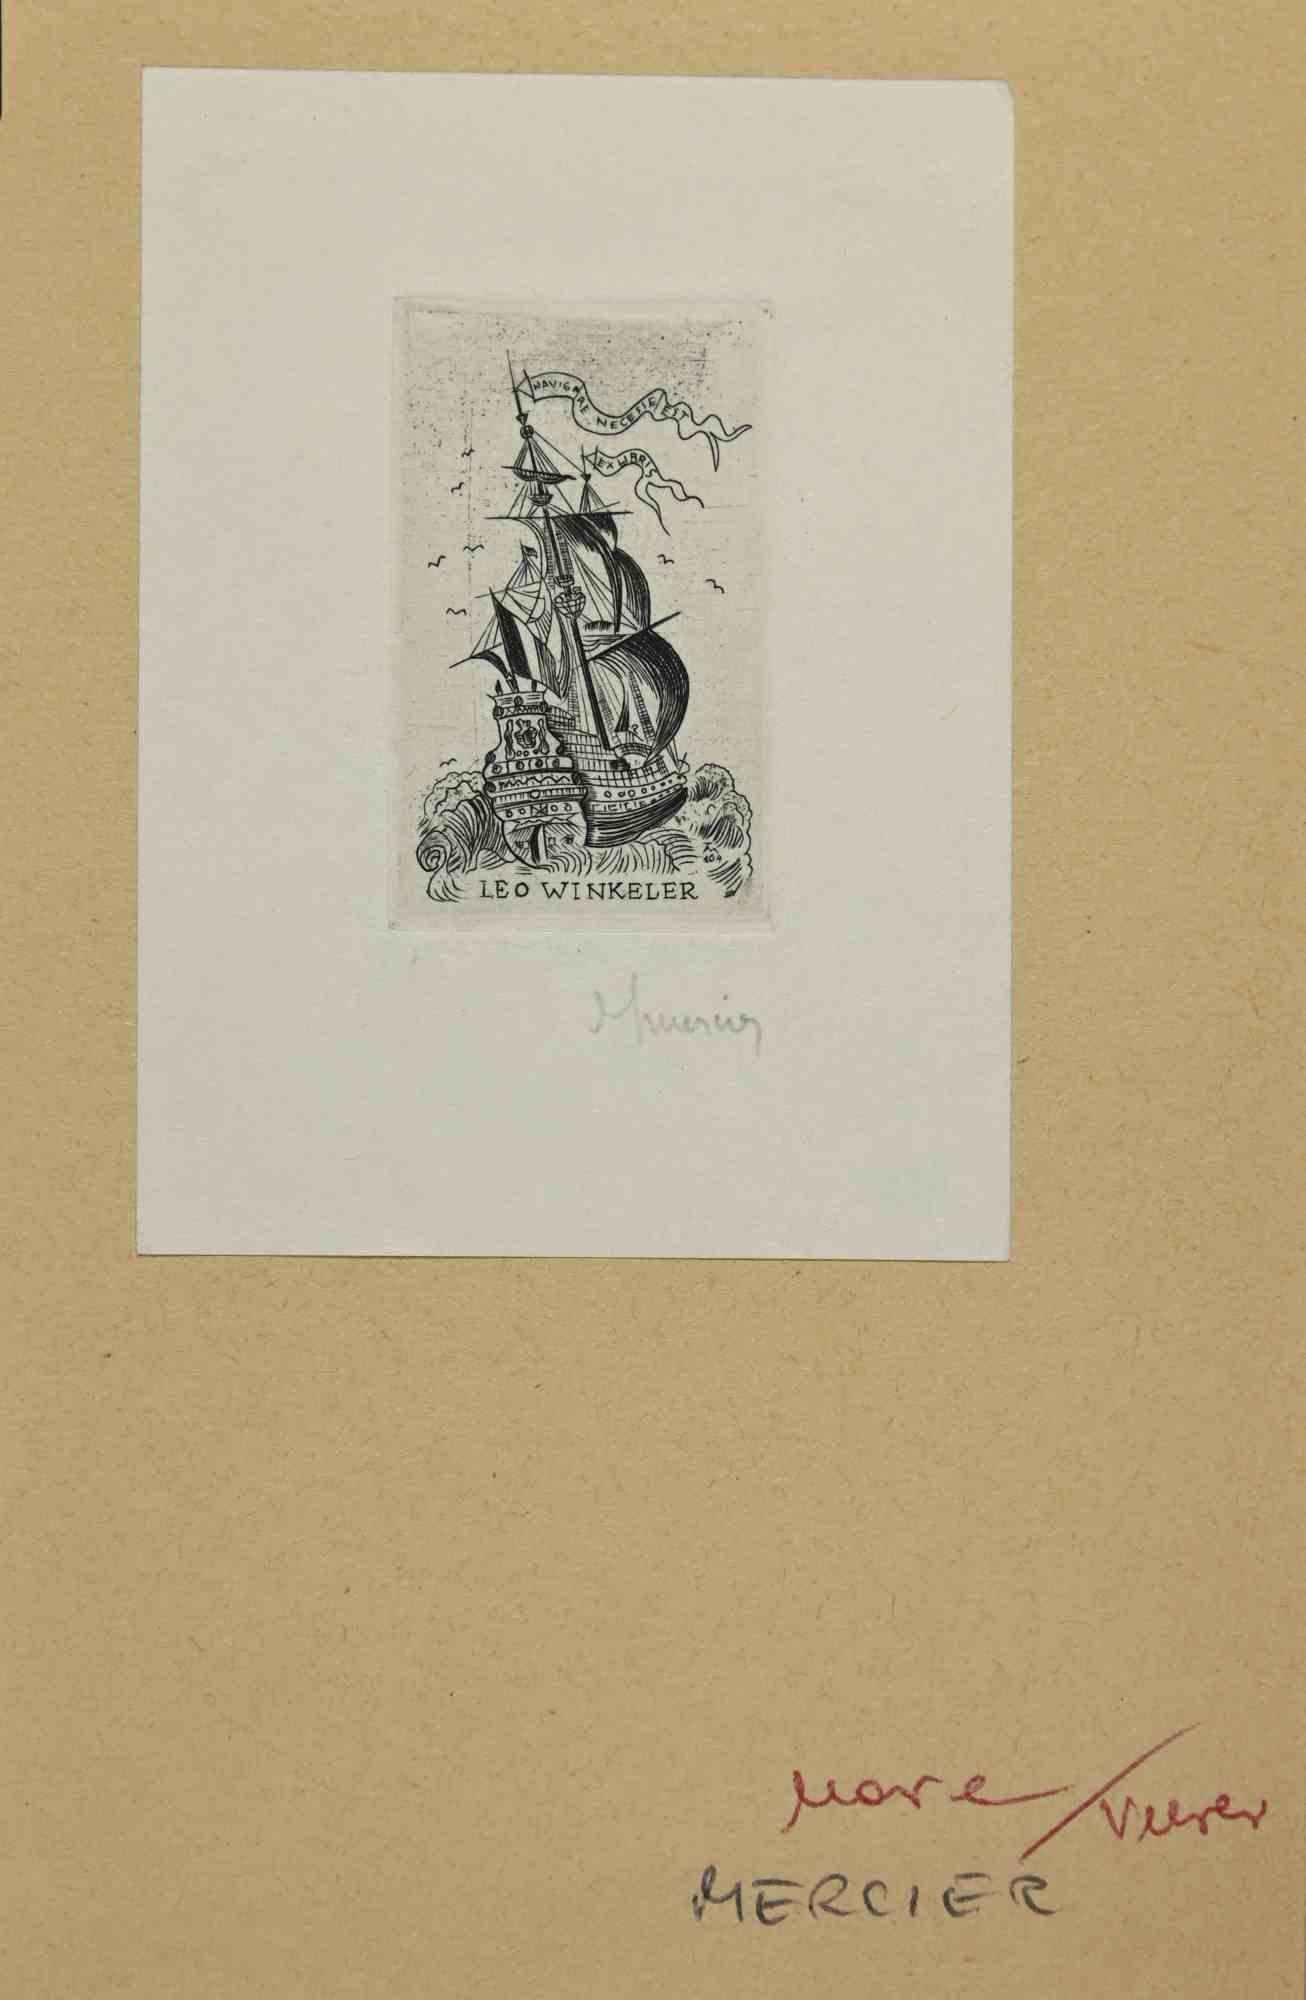 Ex-Libris - Leo Winkeler ist ein Kunstwerk des Künstlers Jocelyn Mercier aus den 1930er Jahren.

Radierung auf Papier. Handsigniert und datiert am rechten Rand.

Das Werk ist auf elfenbeinfarbenen Karton geklebt. Abmessungen insgesamt: 16,5 x 10,5